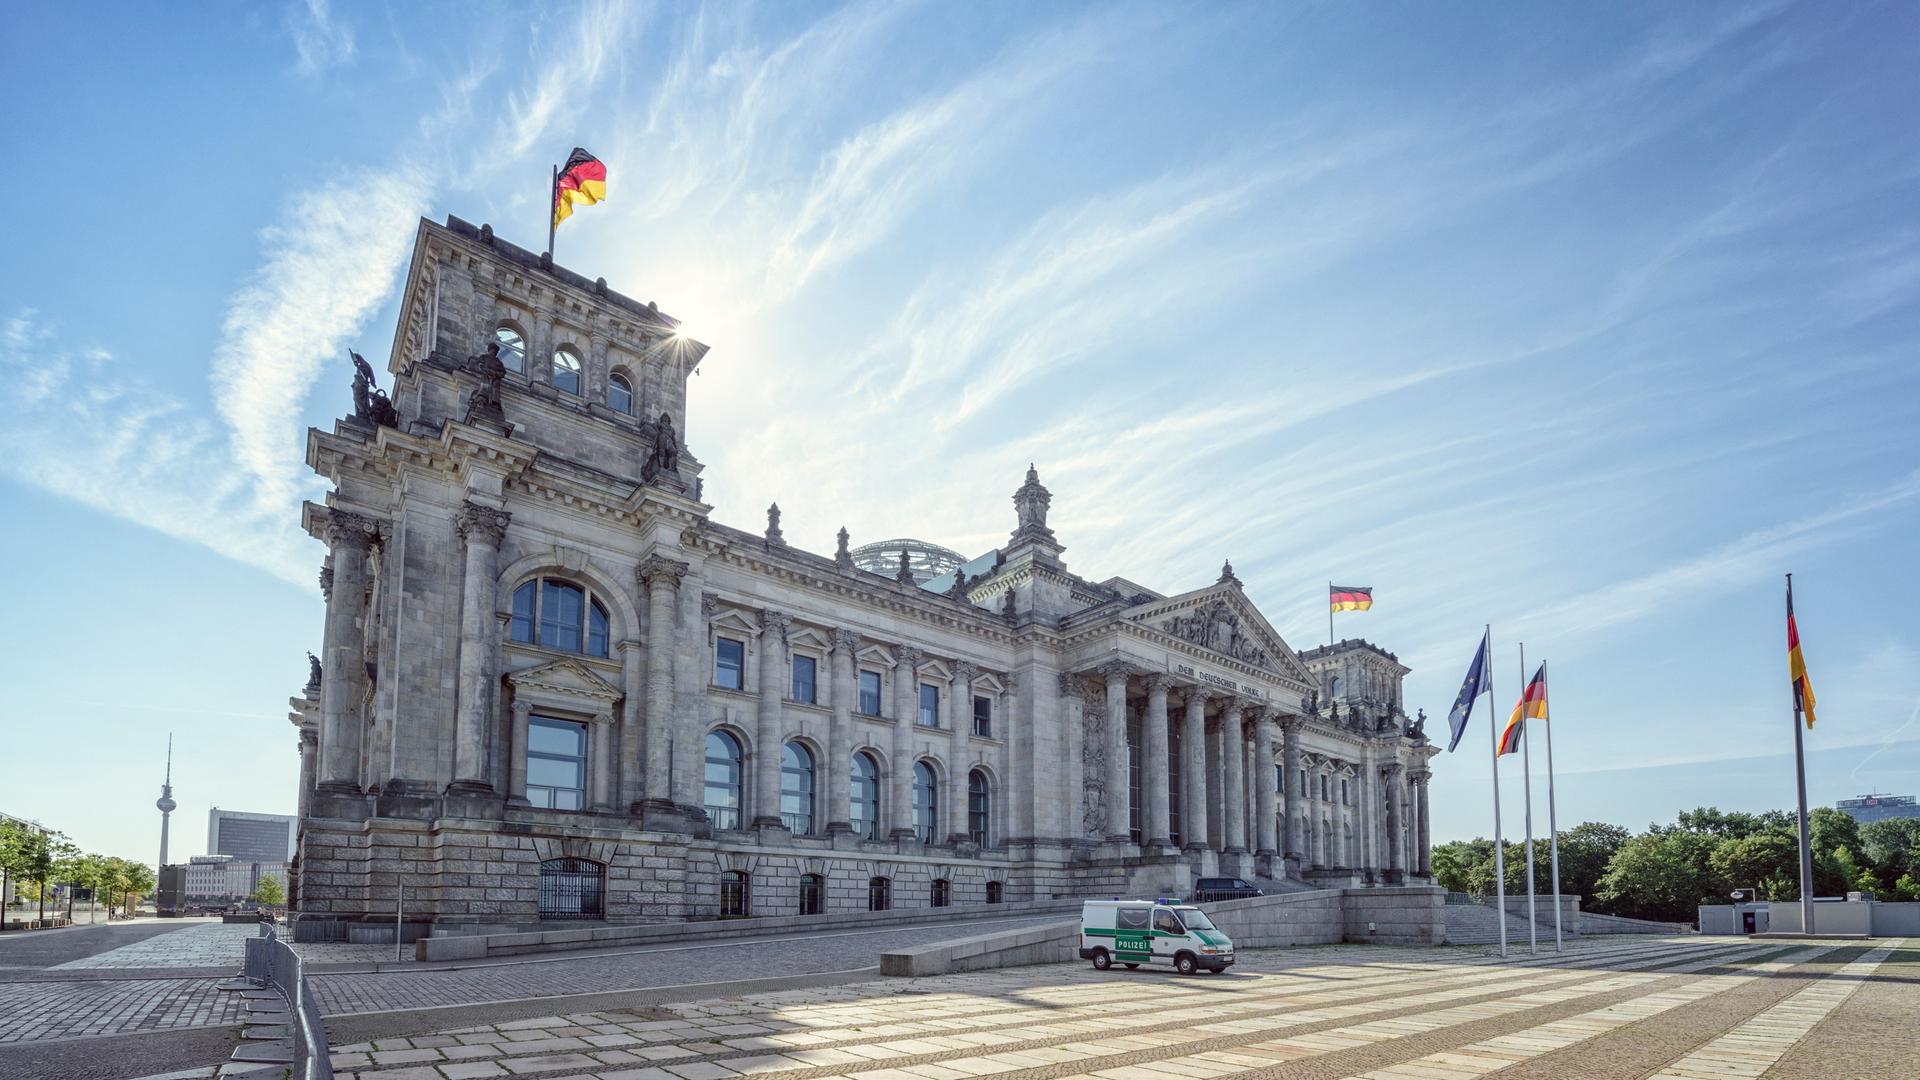 Das Reichstagsgebäude in Berlin, schräg von der Seite fotografiert. Davor ein Polizeifahrzeug. Im Hintergrund blauer Himmel.